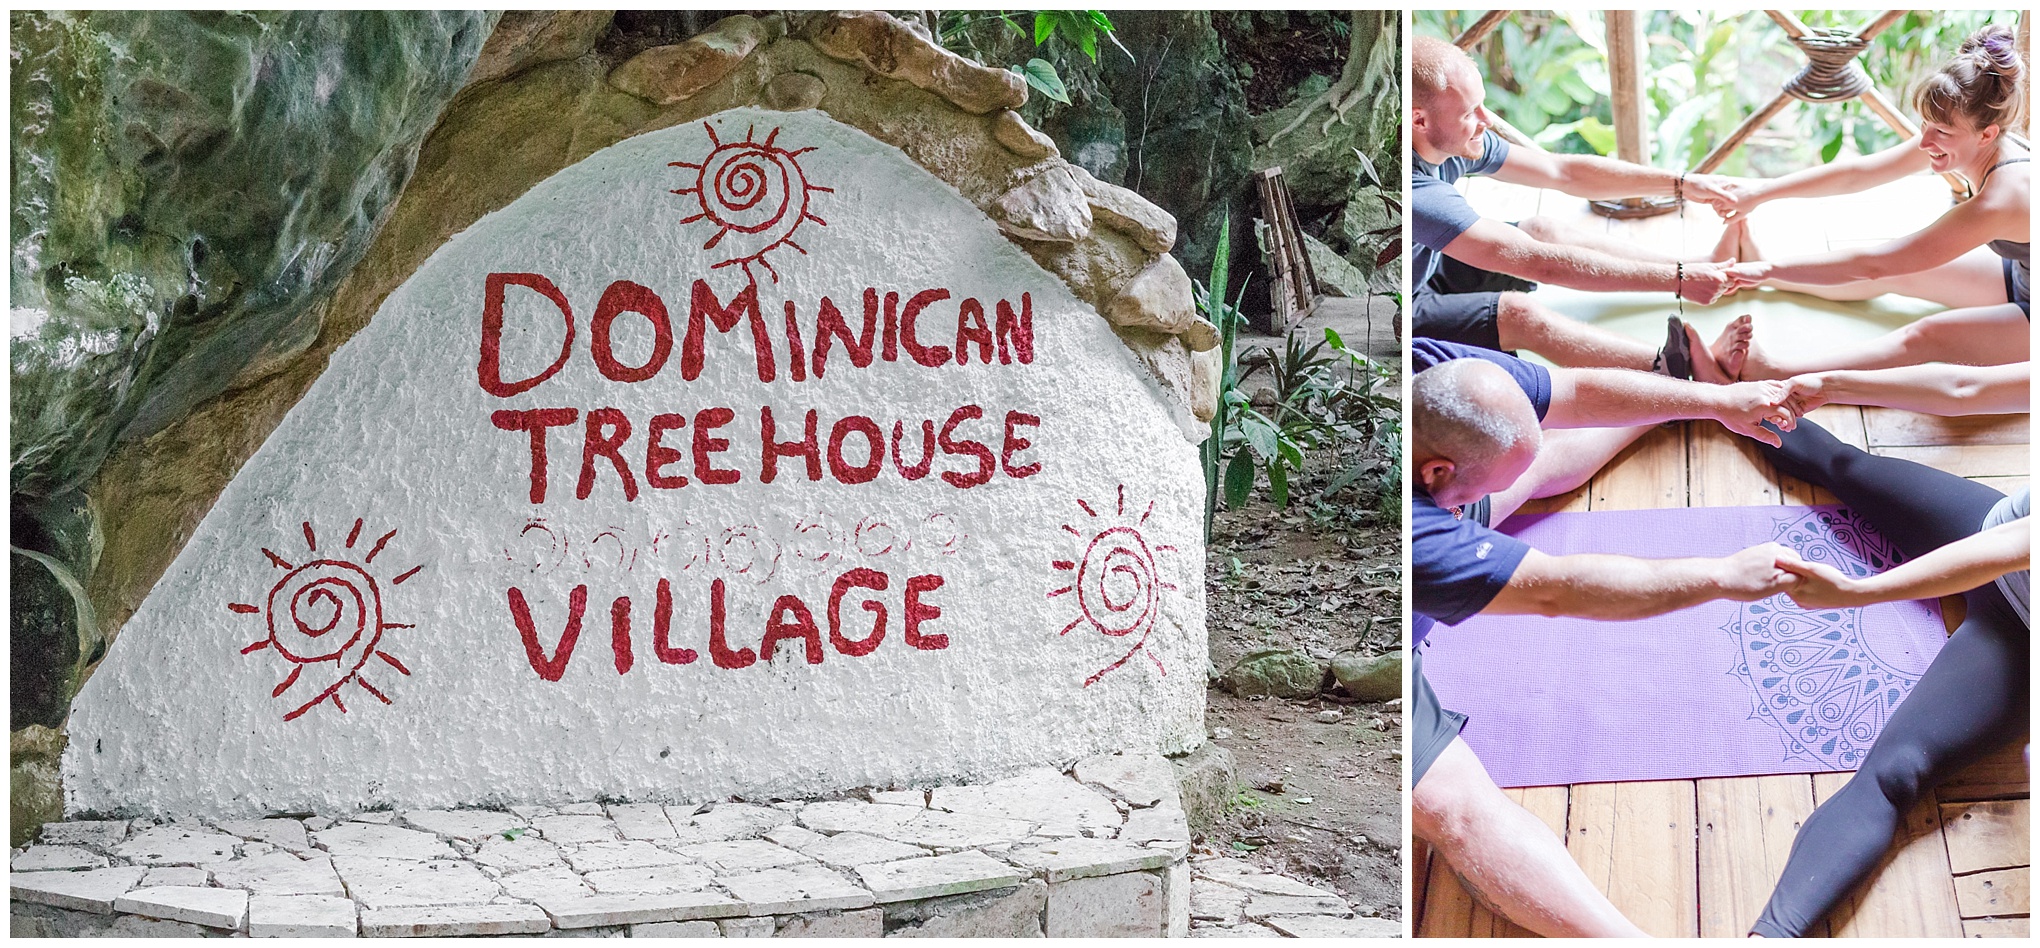 Tree House Village activities